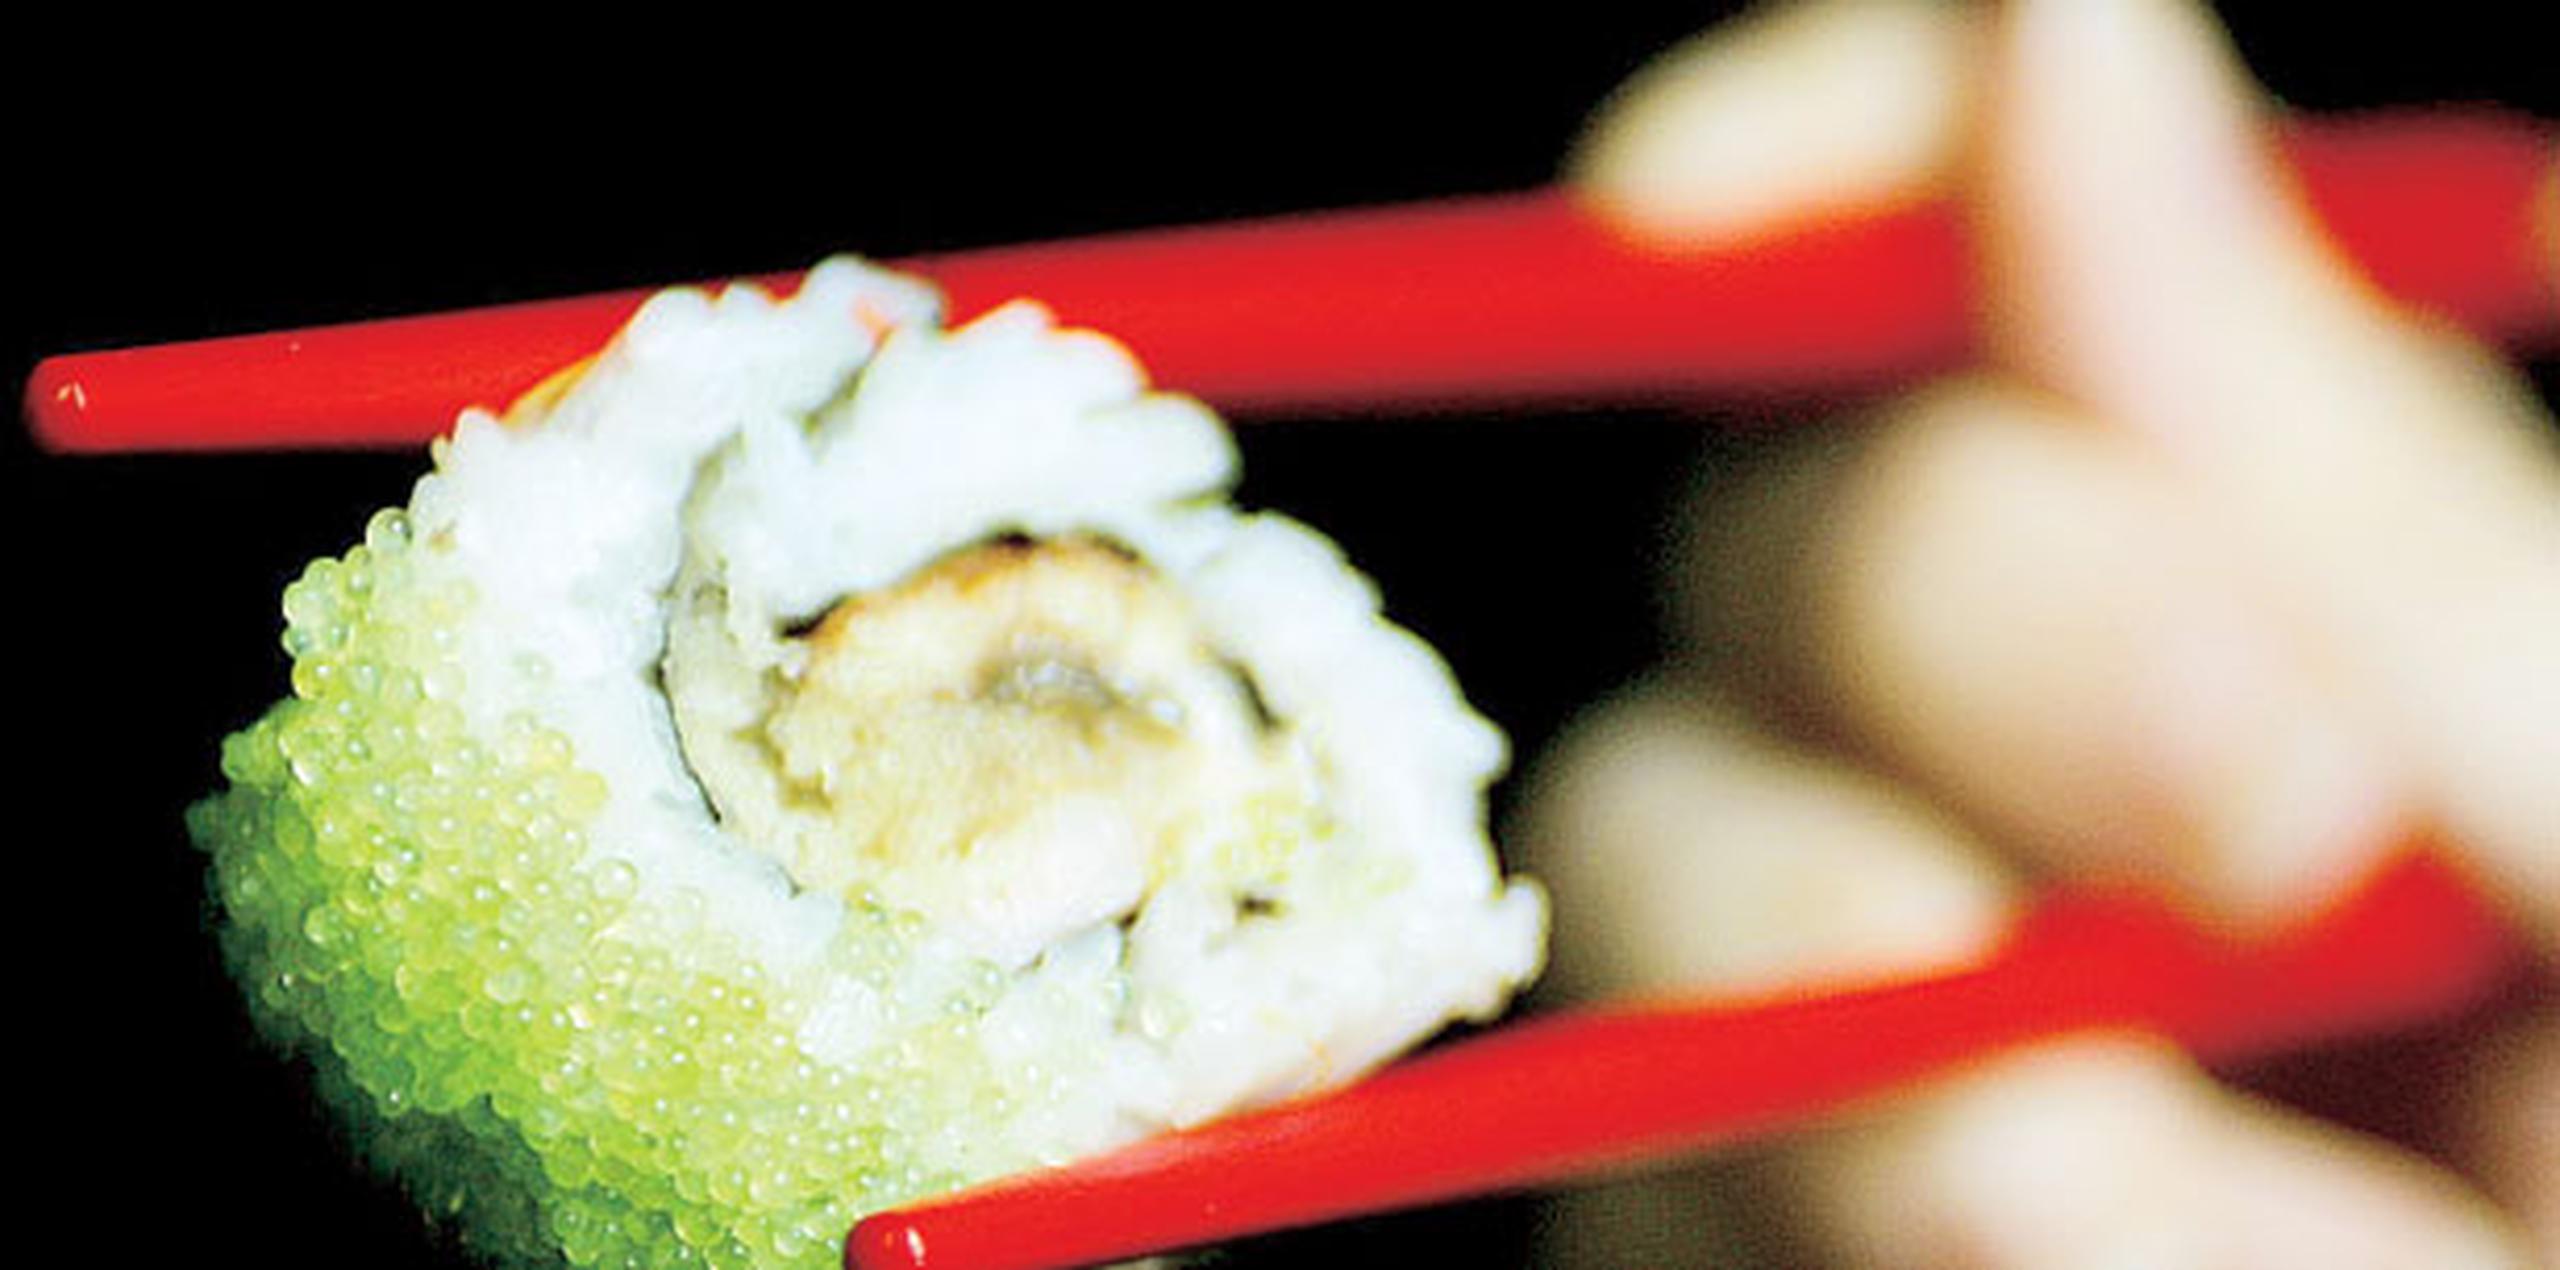 Los especialistas aconsejan evitar el consumo de pescados y mariscos crudos en todas sus formas, incluido el sushi y el ceviche. (Archivo)